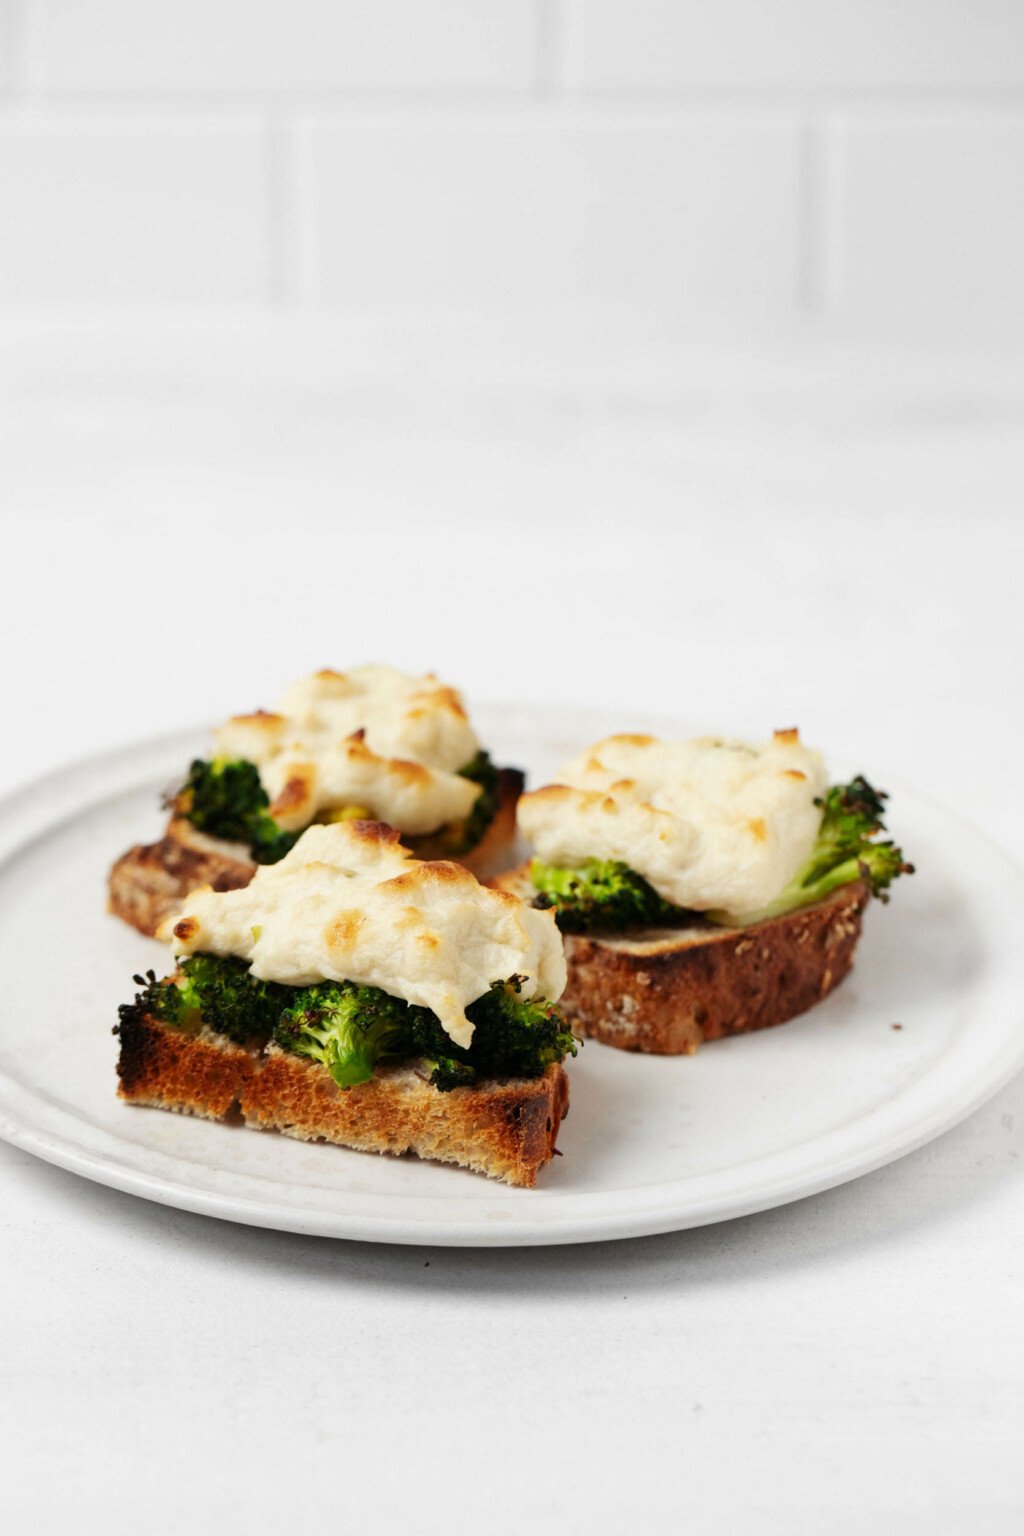 Μια γωνιακή φωτογραφία φρυγανισμένων μισών ψωμιού, που ολοκληρώνονται με τυρί φυτικής προέλευσης, στυλ μοτσαρέλας και λαμπερά πράσινα λουλούδια μπρόκολου.  Υπάρχει μια λευκή επιφάνεια πλακιδίων στο βάθος.